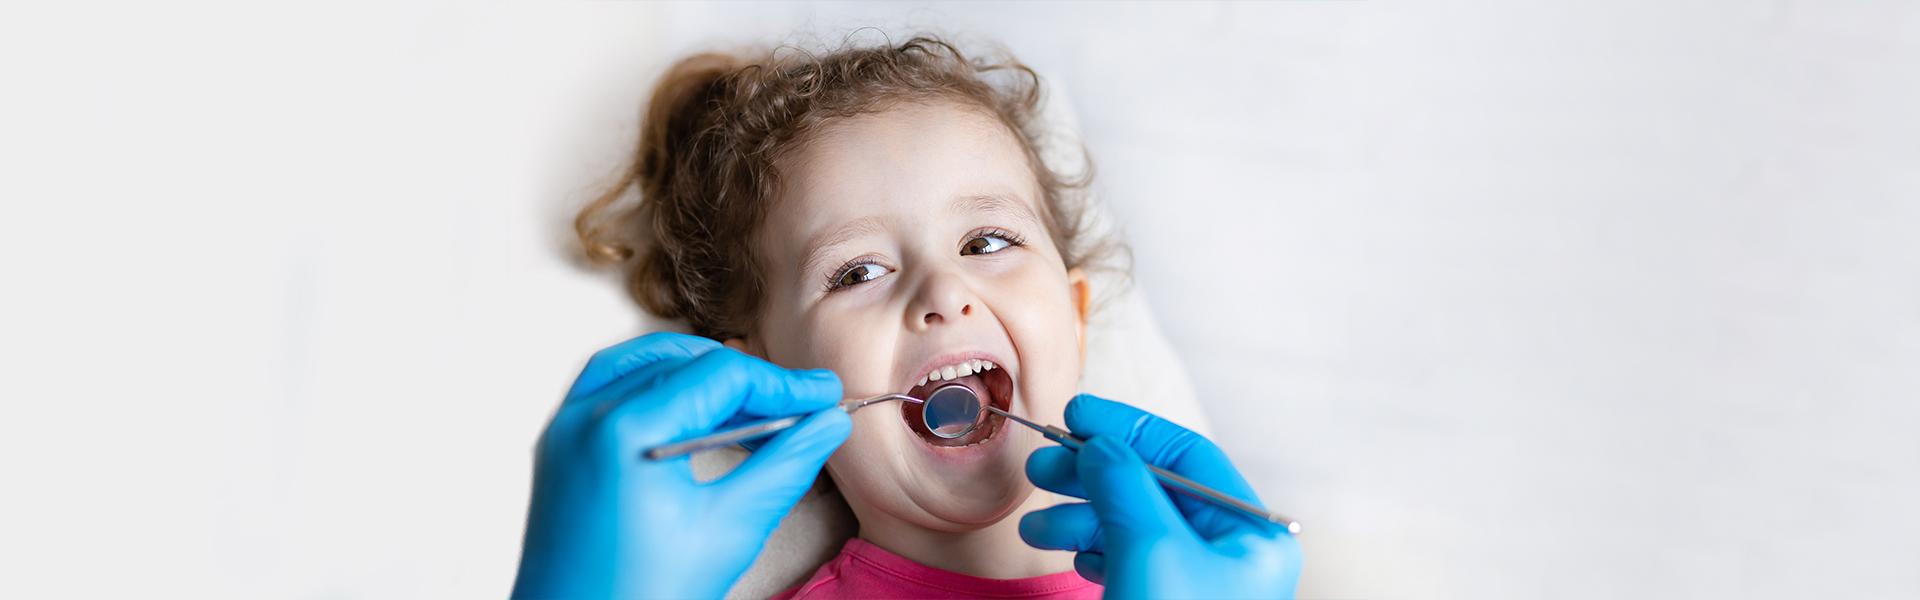 Children’s Dentistry | Pediatric Dentist in Covina, CA